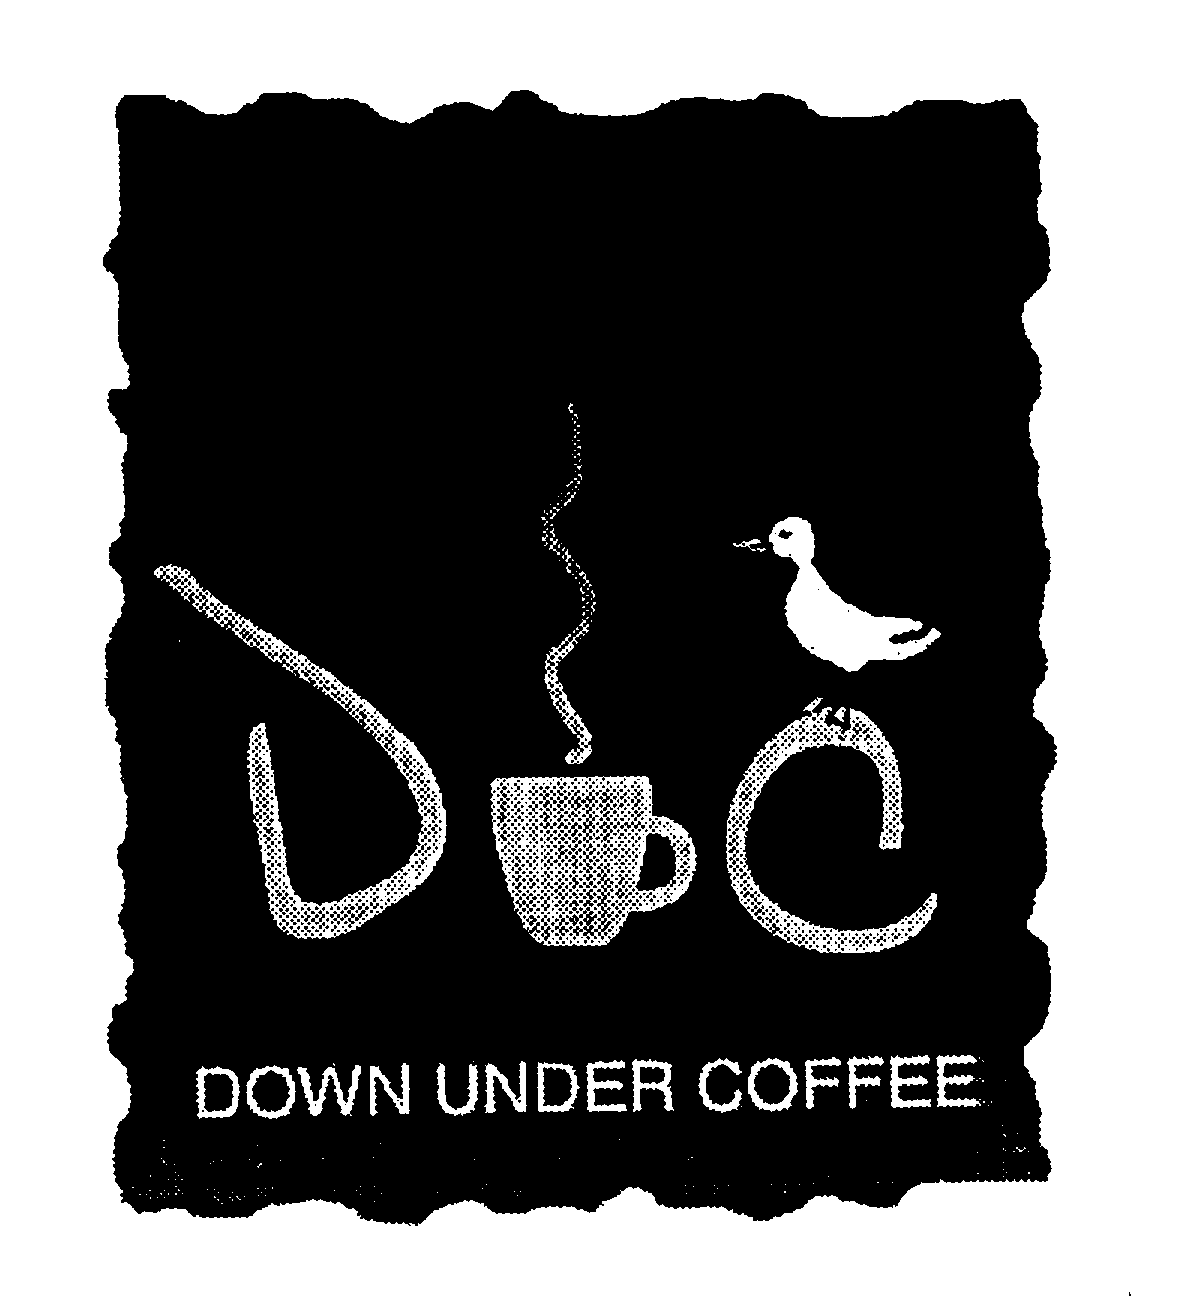  DOWN UNDER COFFEE